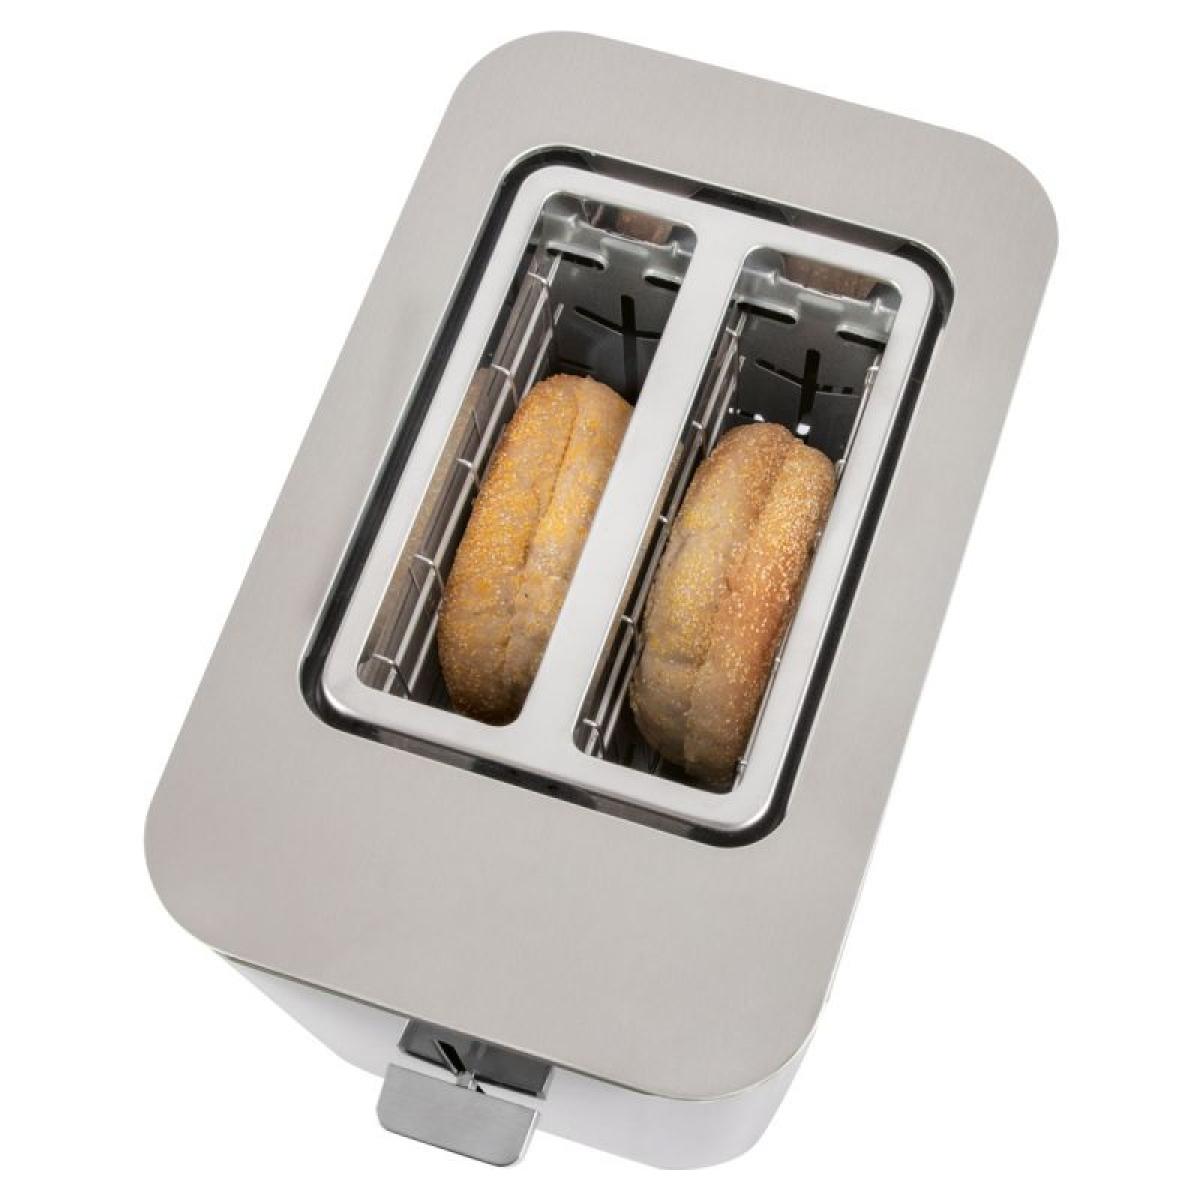 Proficook - Grille pain 2 fentes en acier inoxydable avec écran tactile  Proficook PC-TA1250